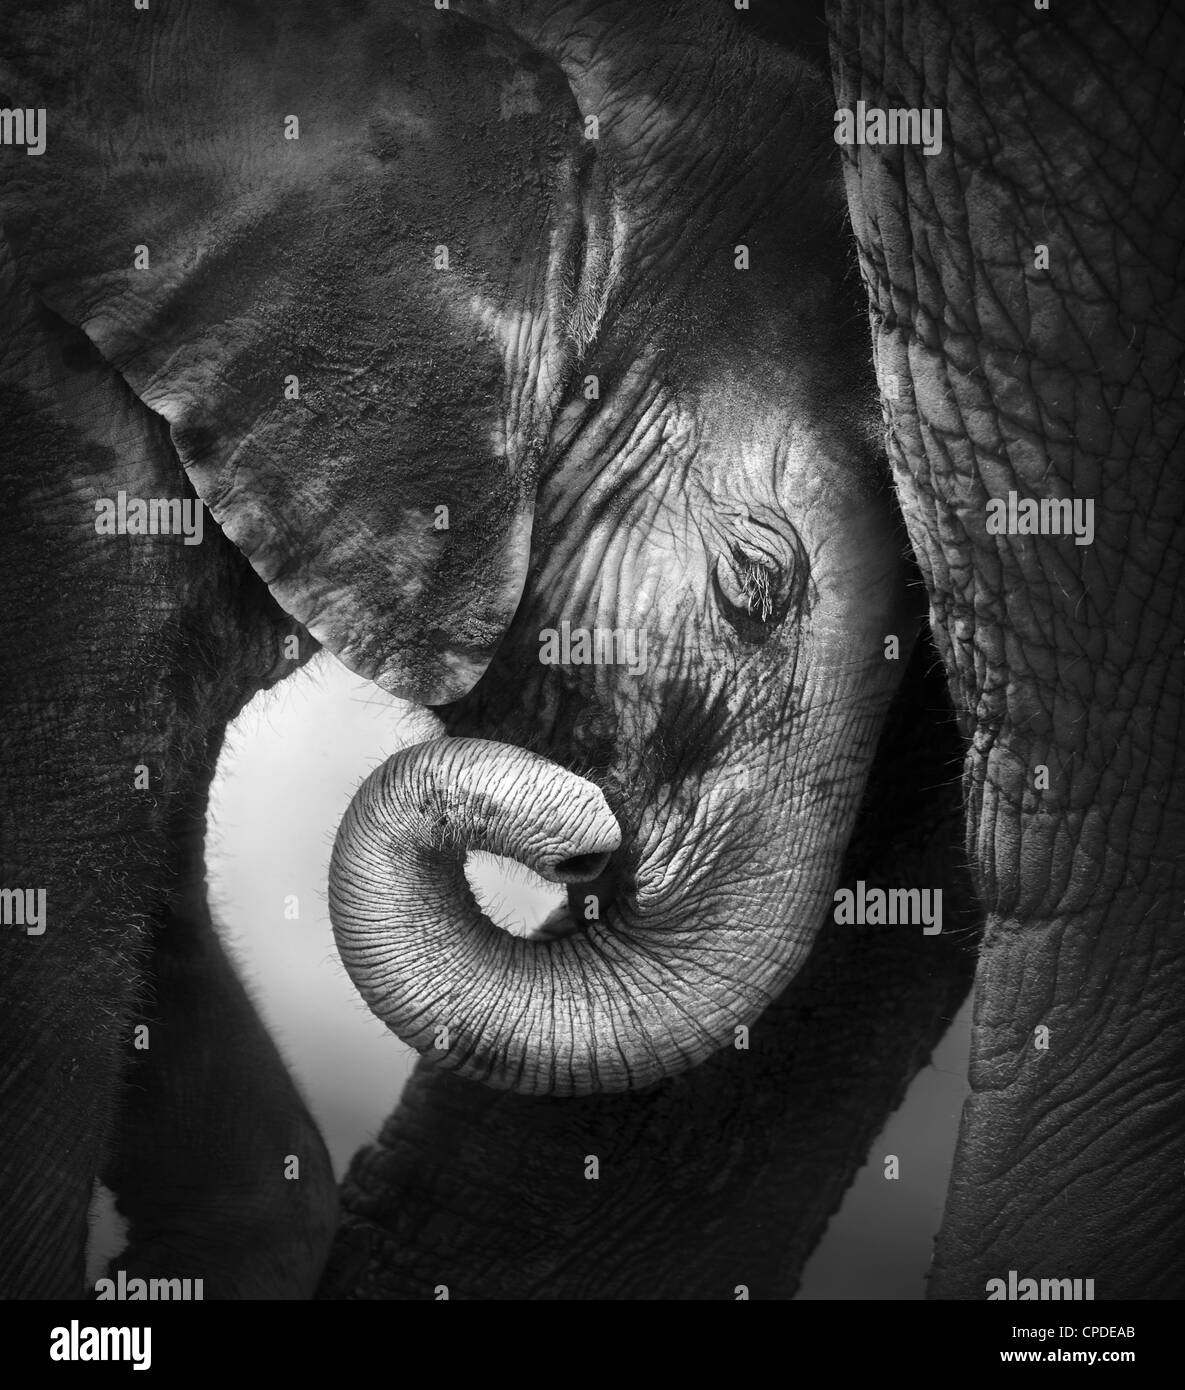 Baby elephant seeking comfort against mother's leg - Etosha National Park Stock Photo